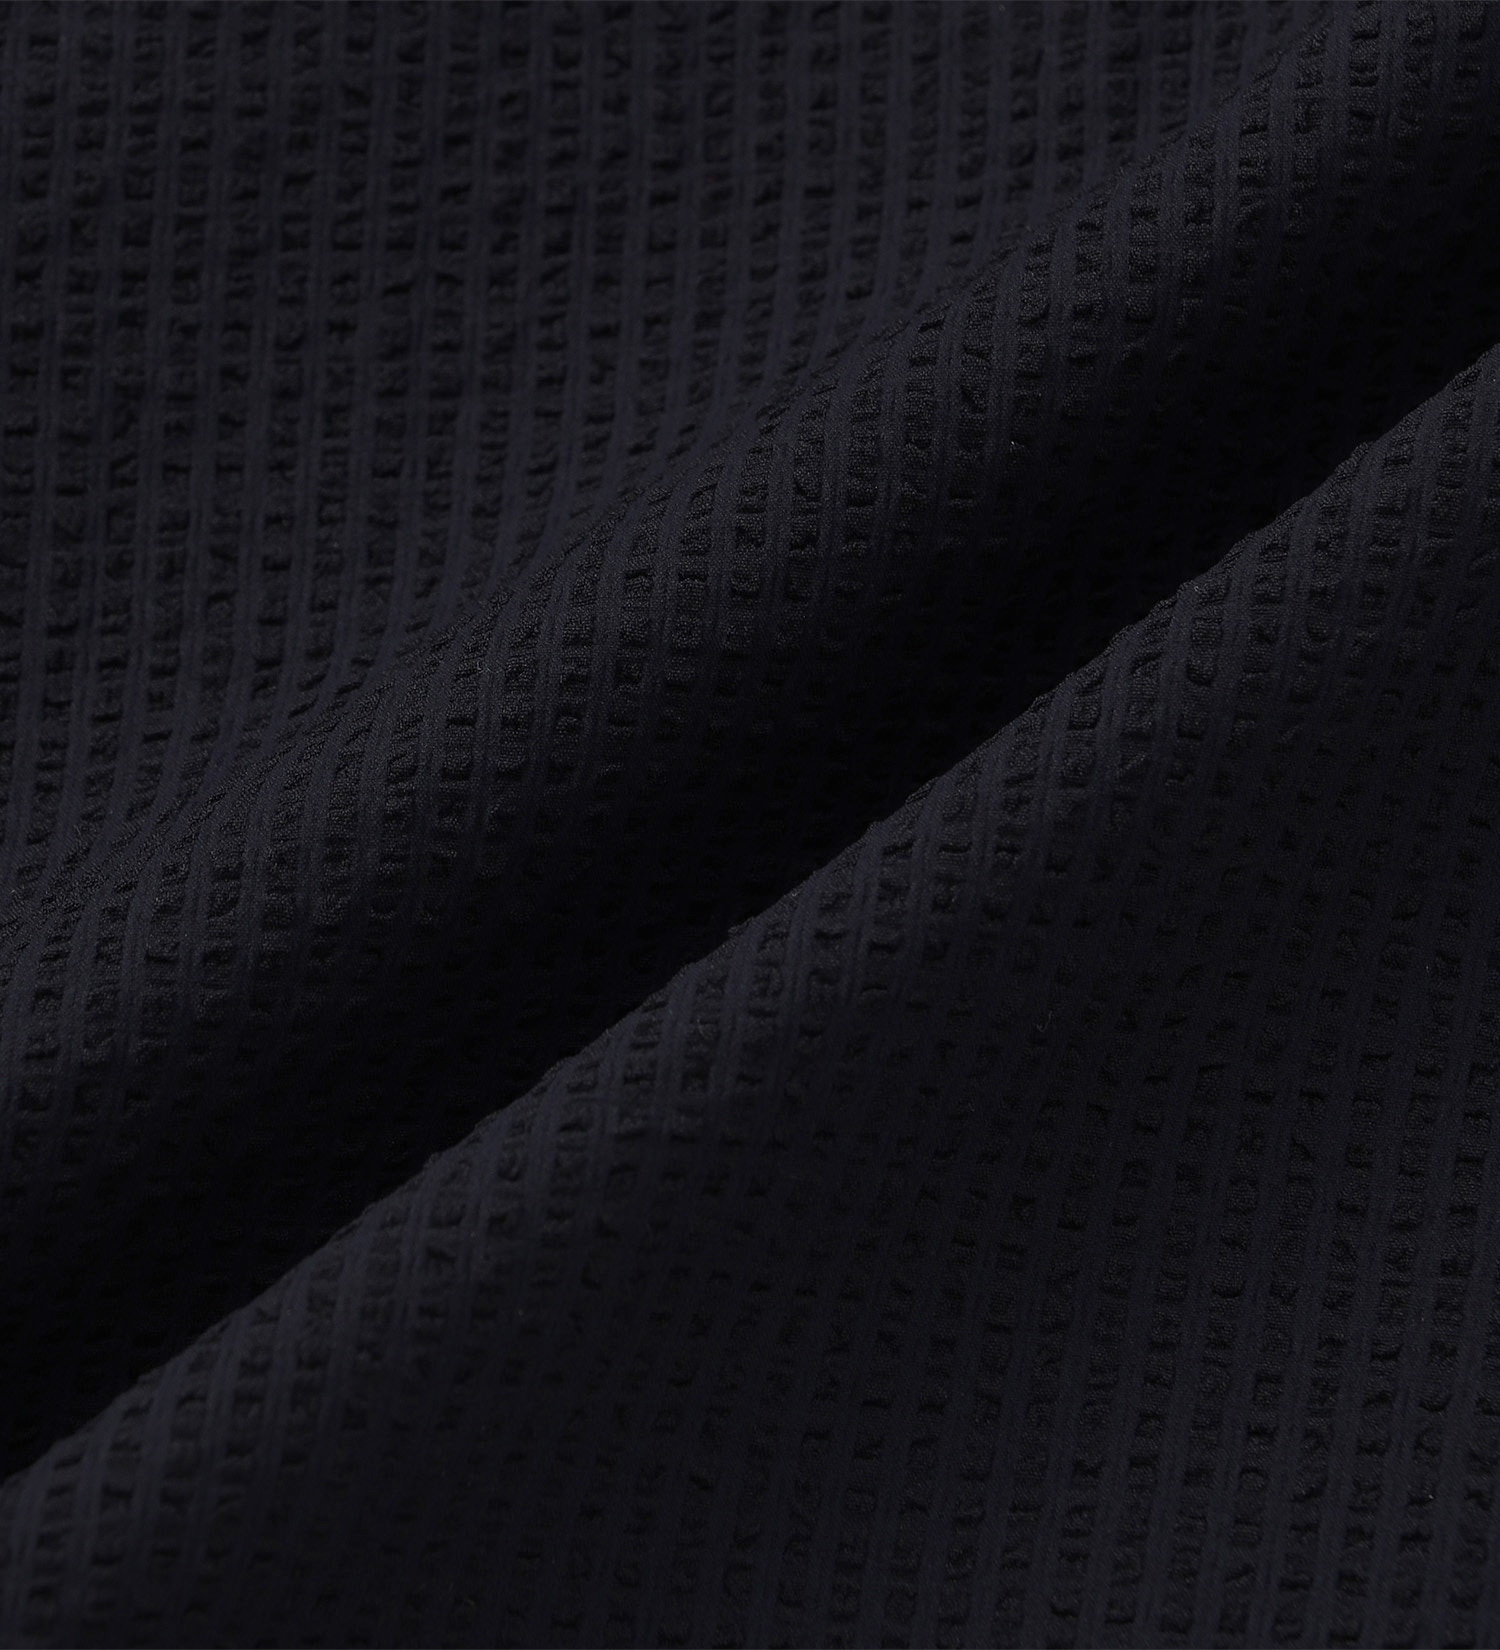 EDWIN(エドウイン)の【BLACKFRIDAY】オープンカラーシャツ 半袖（シアサッカー）【アウトレット店舗・WEB限定】|トップス/シャツ/ブラウス/メンズ|ネイビー